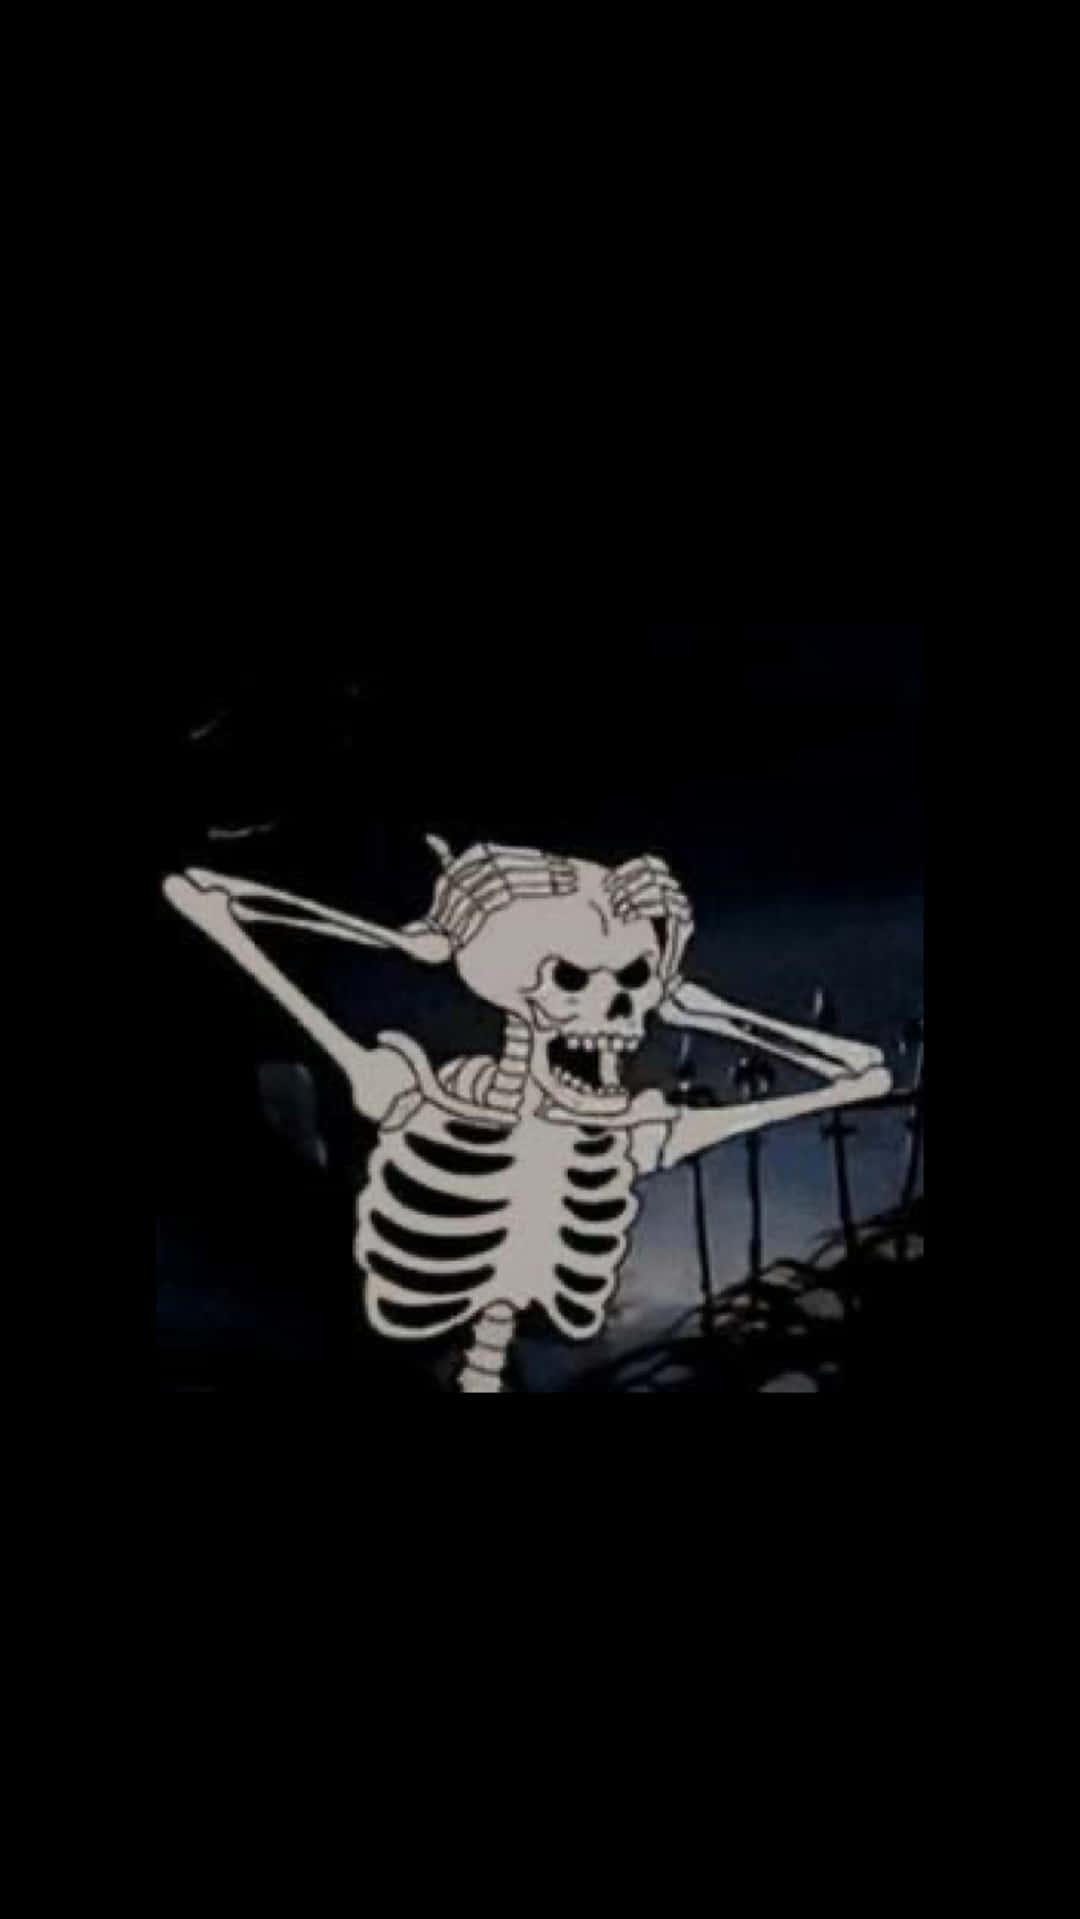 Skeleton Aesthetic Black Grunge Wallpaper